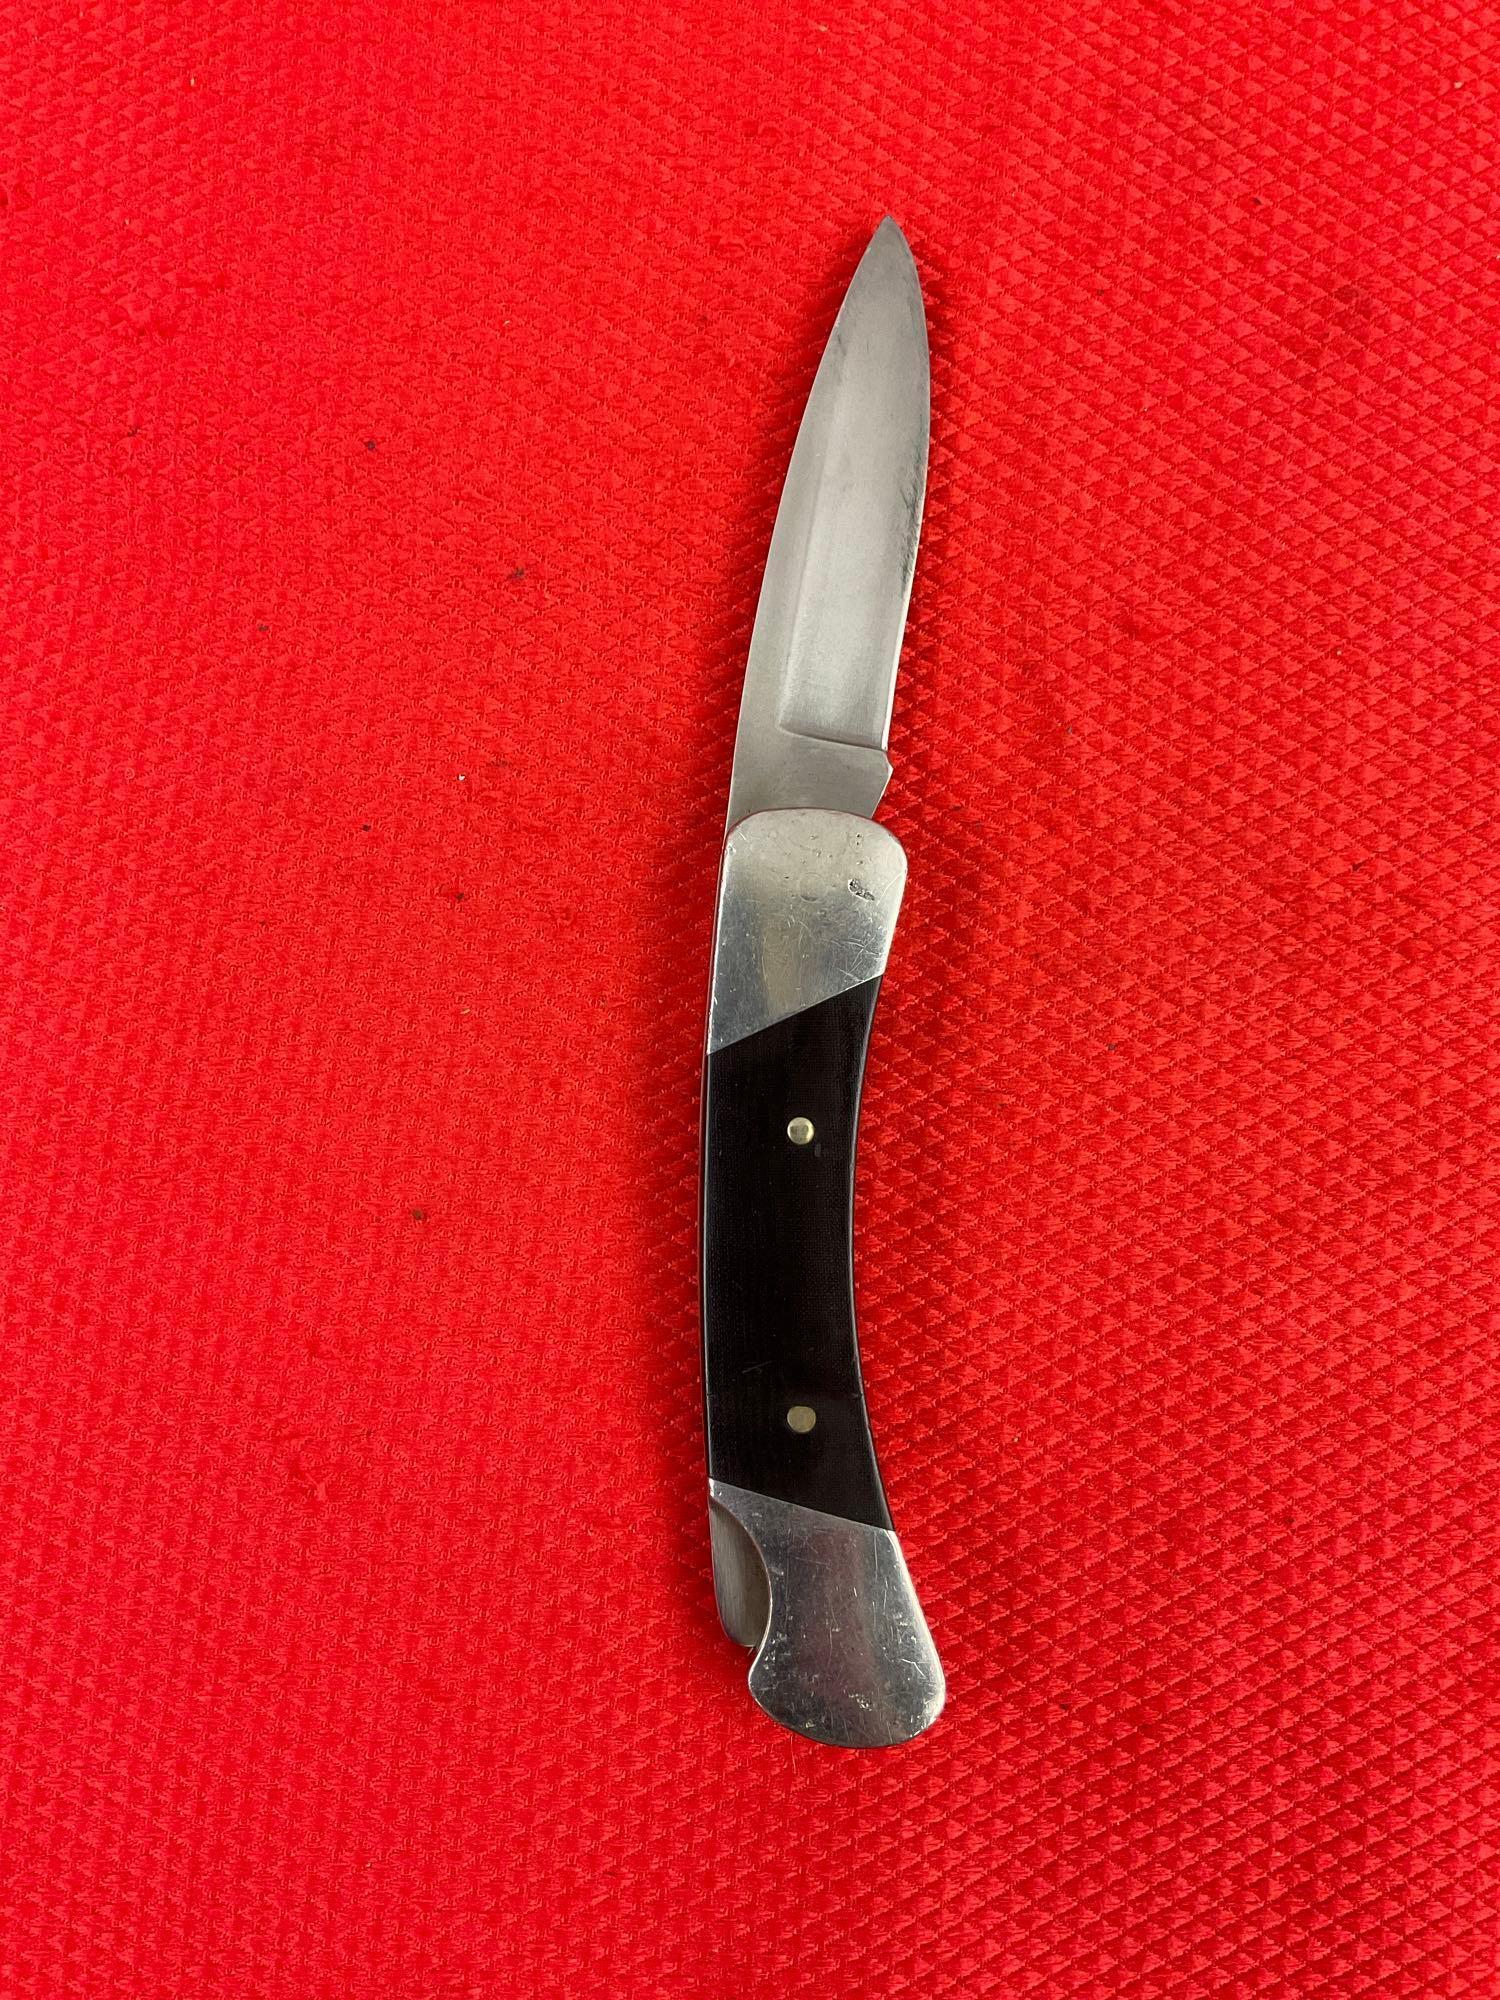 Modern Buck 3" Steel Folding Blade Pocket Knife Model 500 Duke w/ Leather Sheath. See pics.